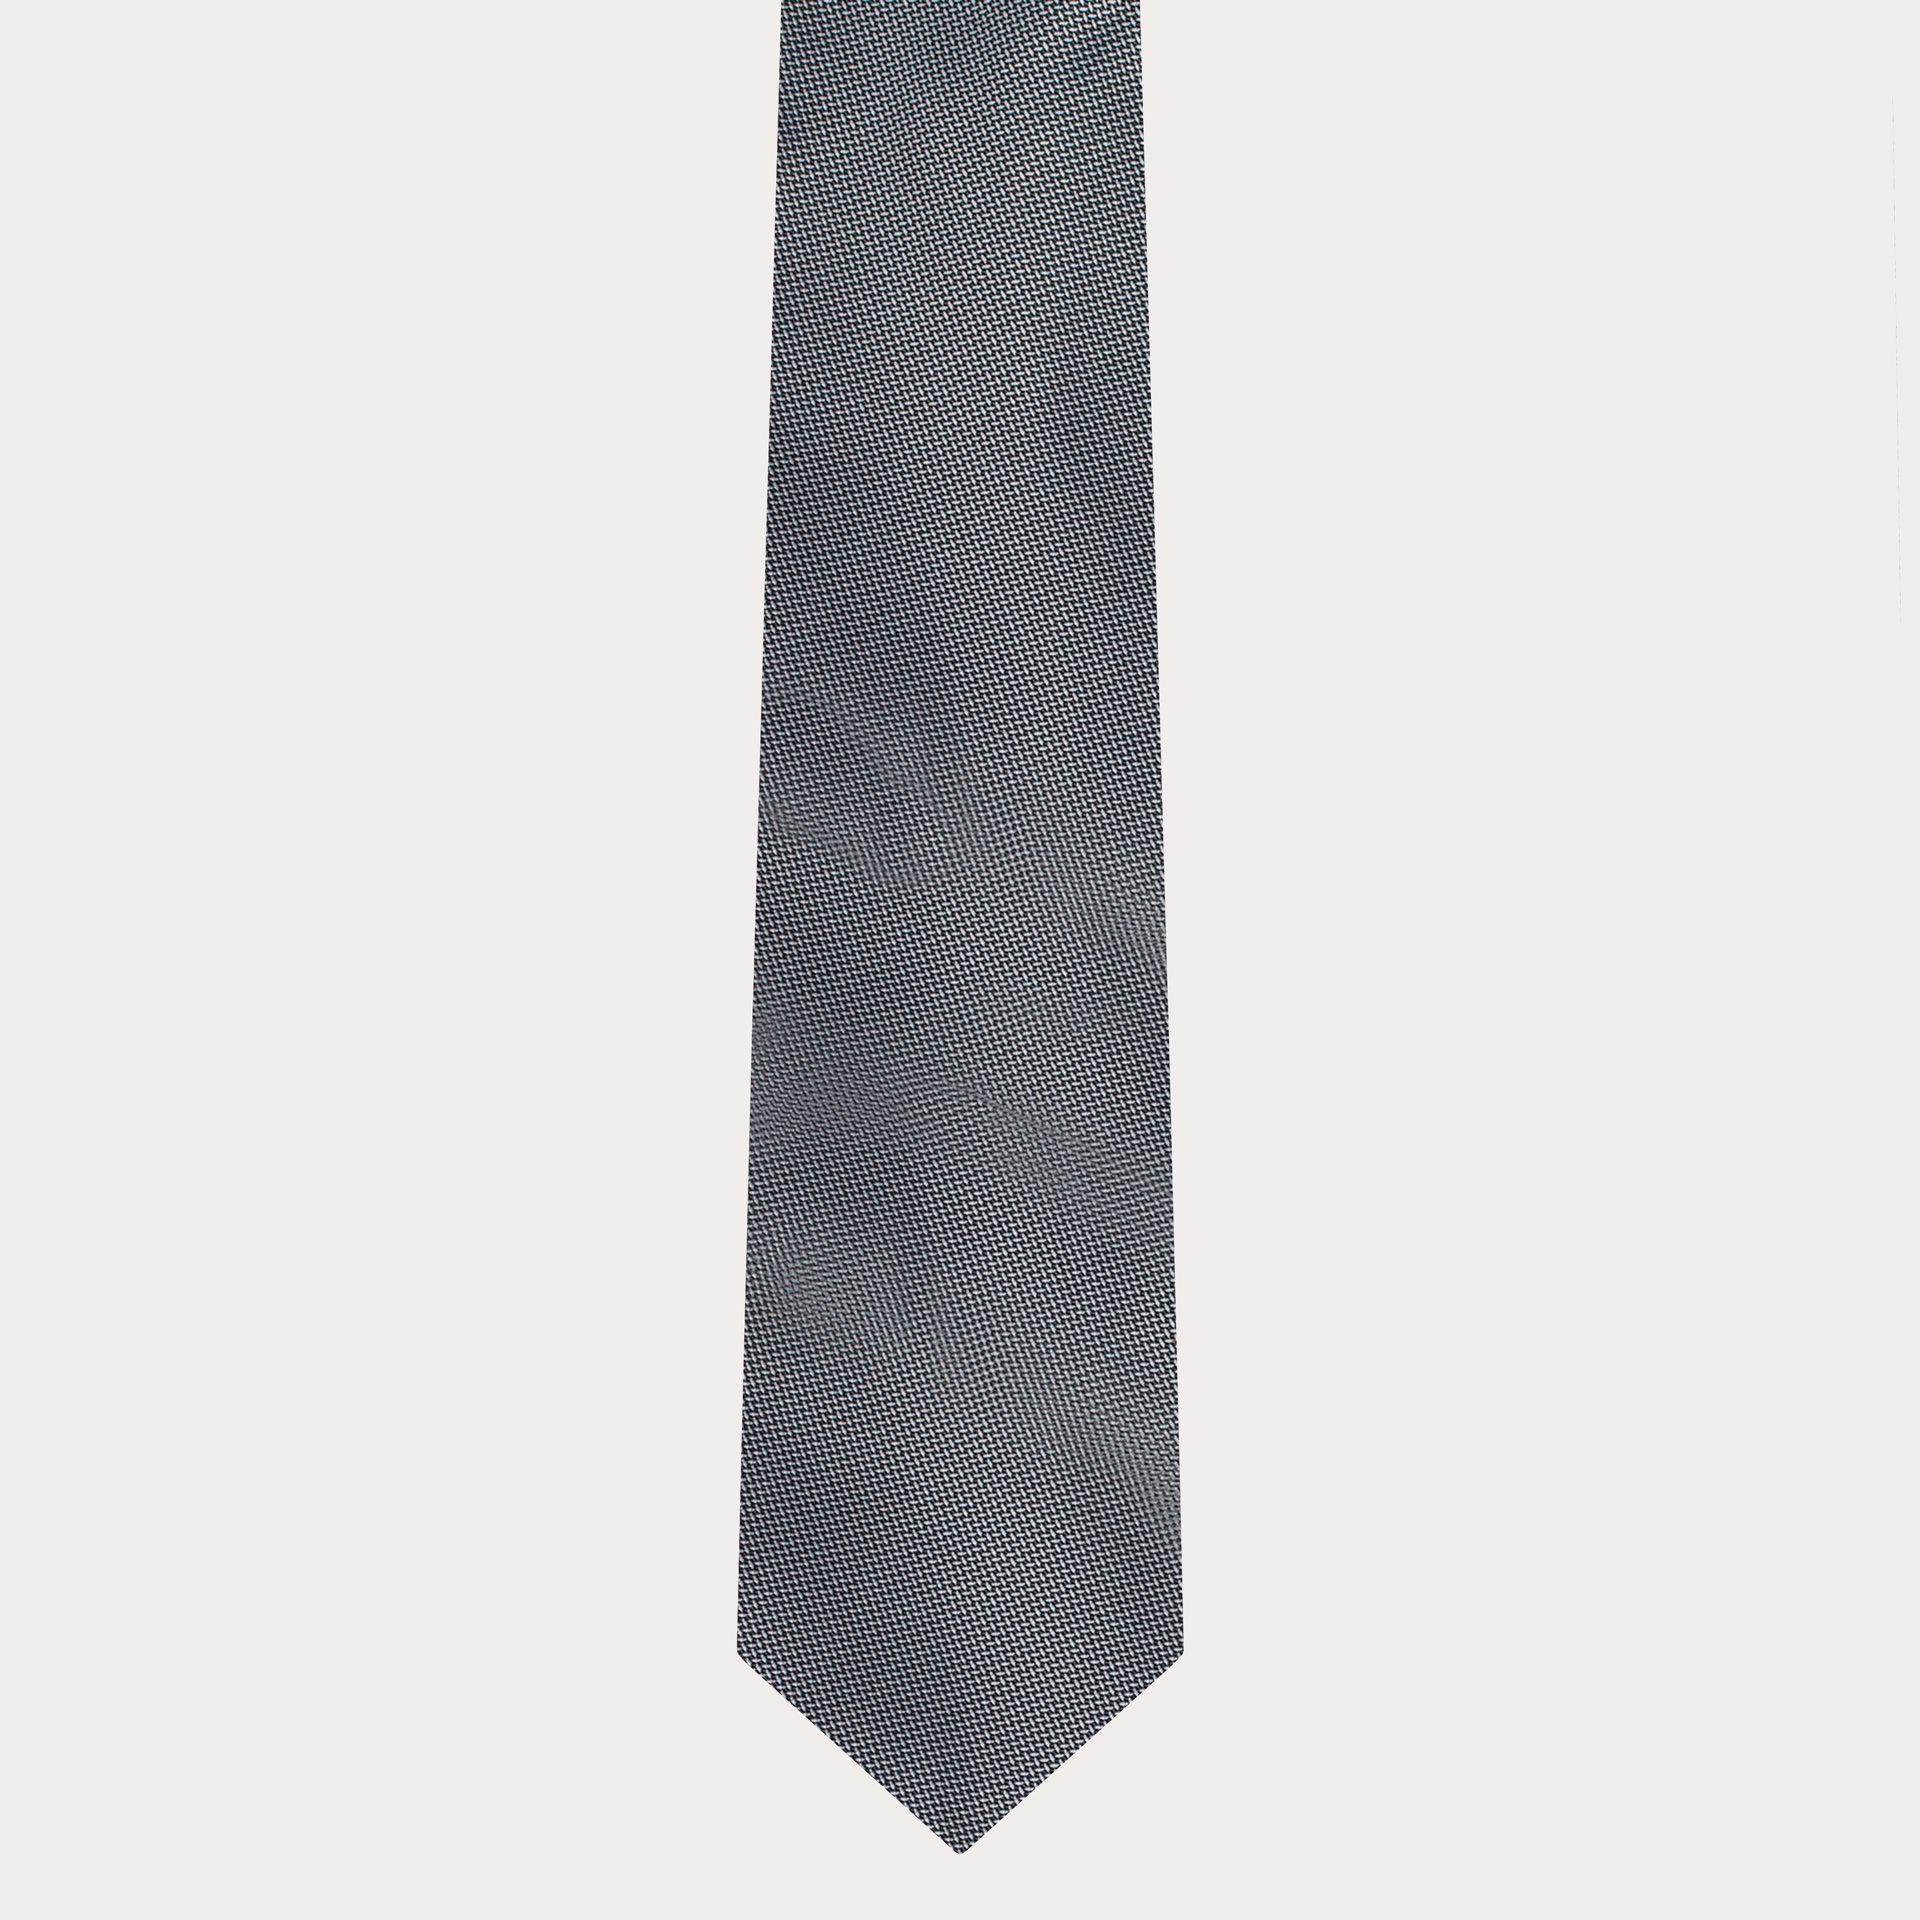 BRUCLE Elegante cravatta in seta jacquard con microfantasia argentea